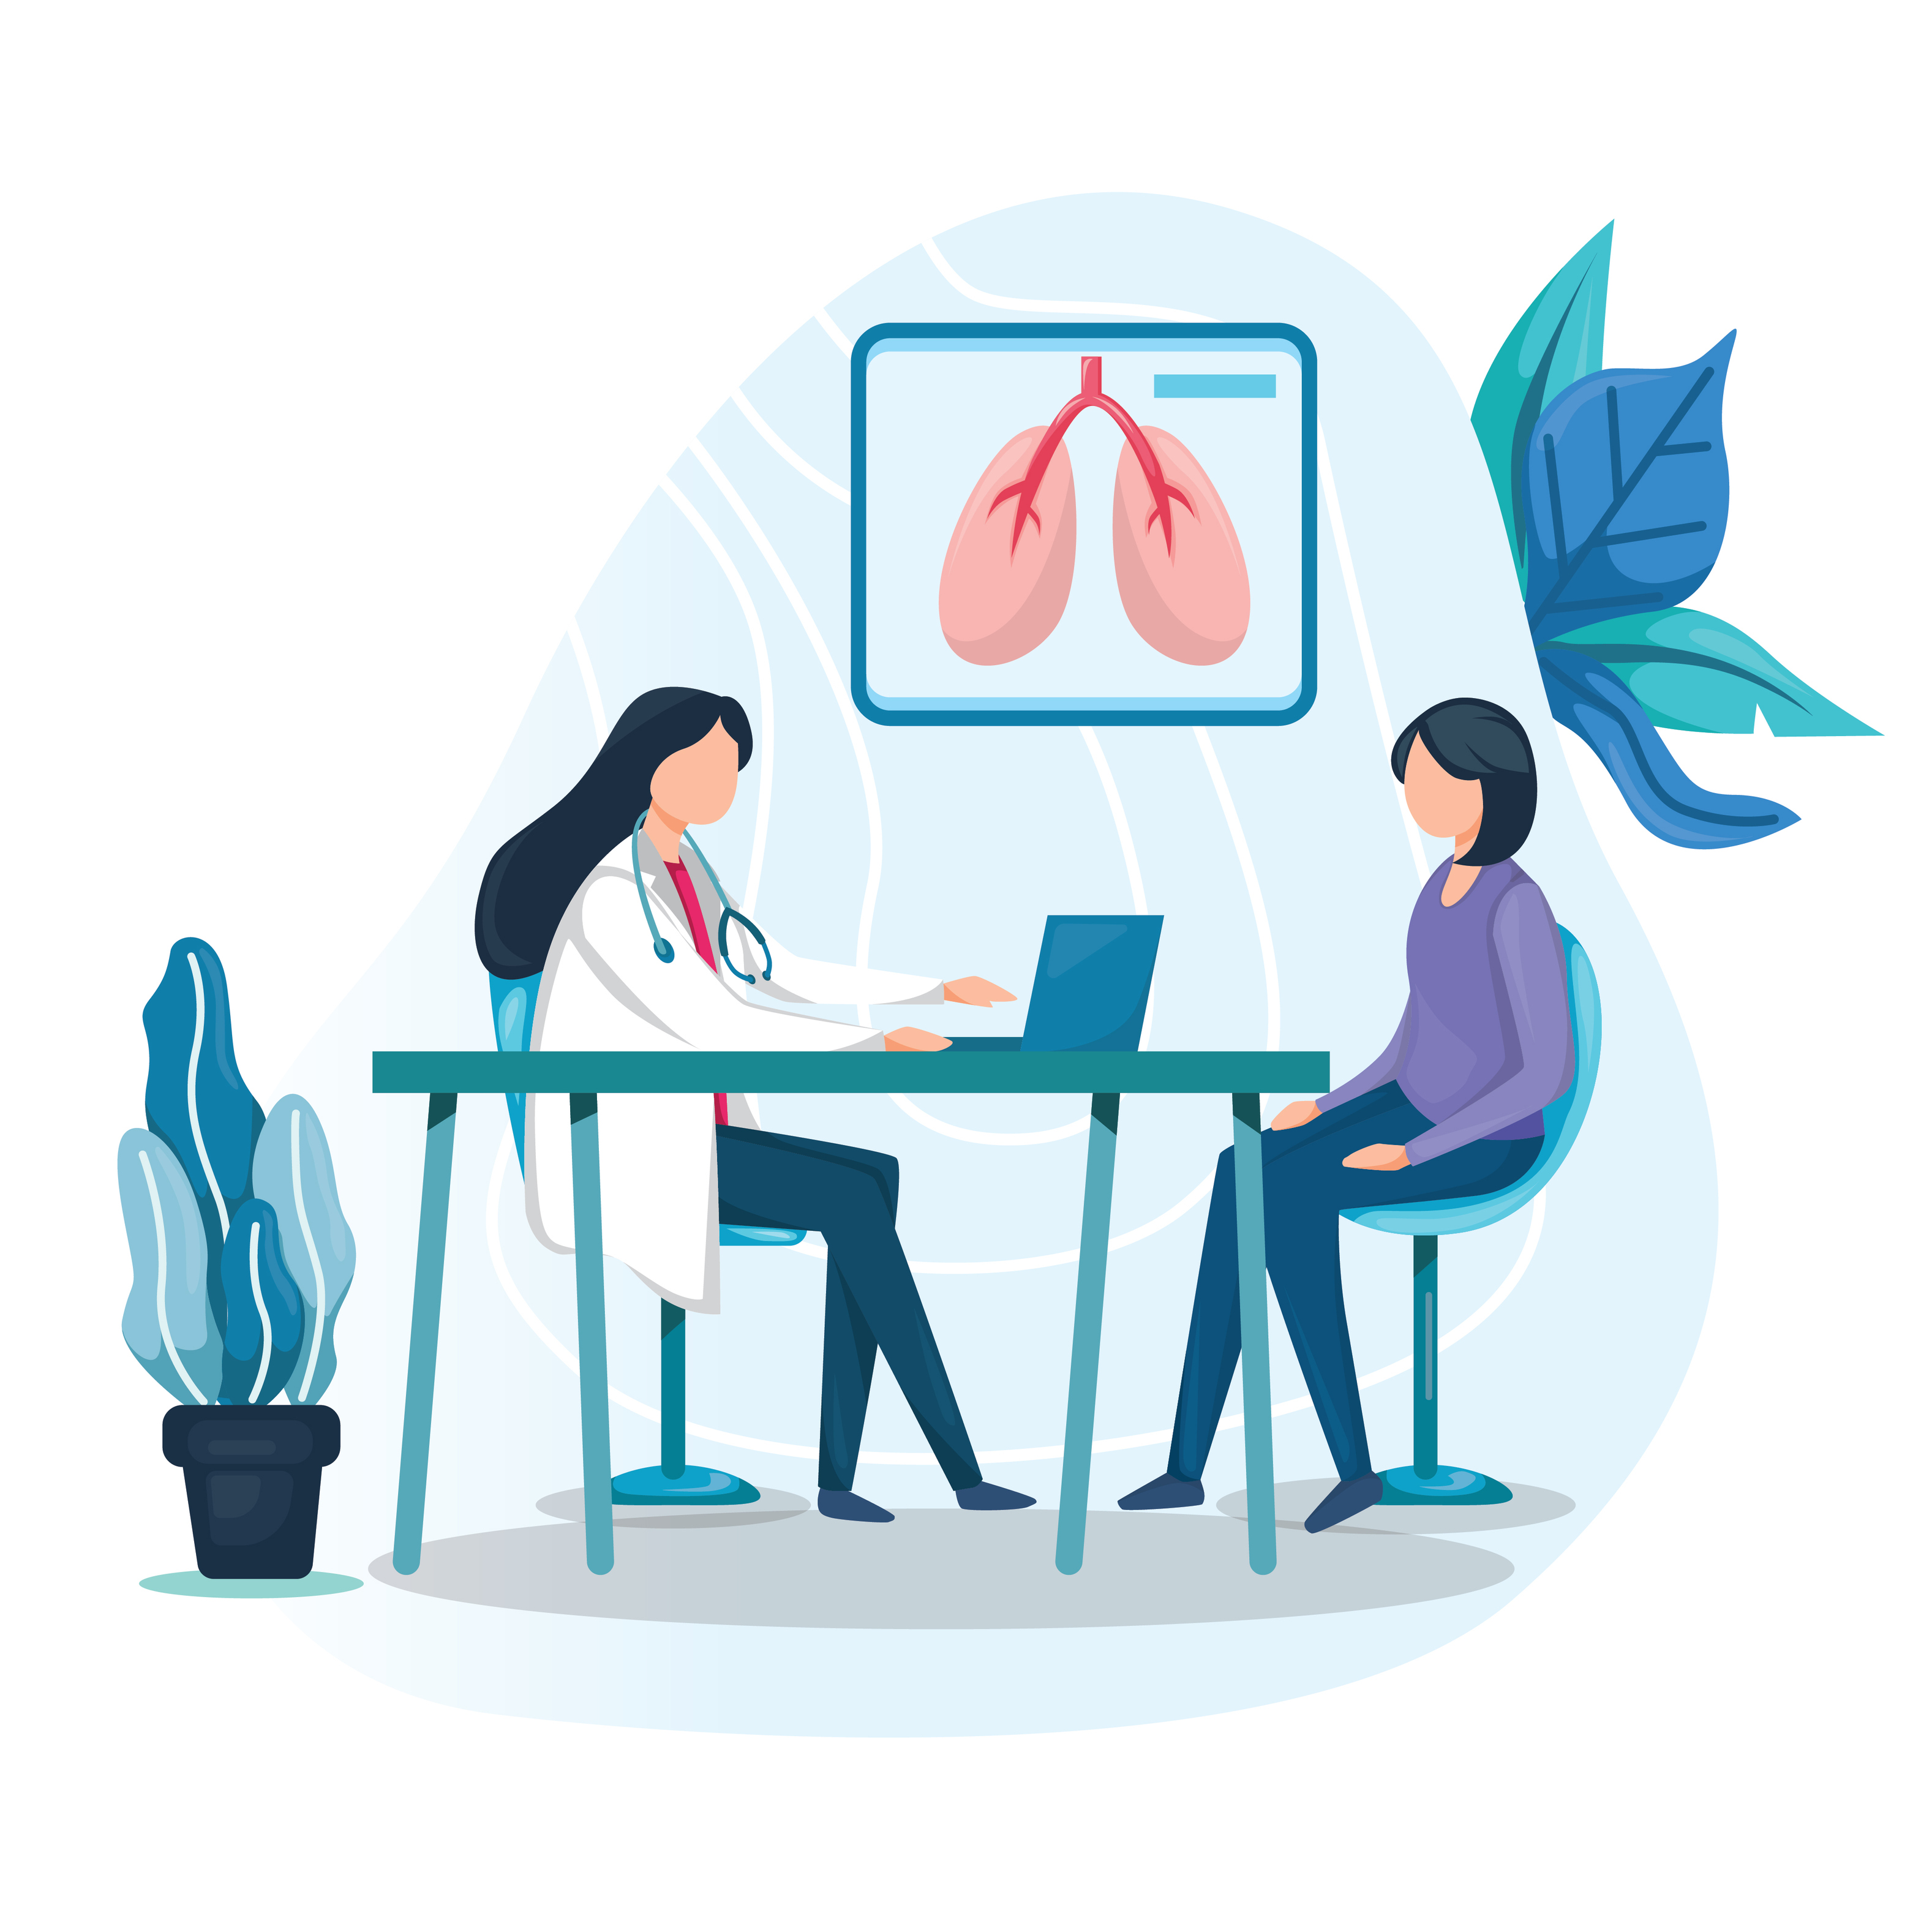 1ος Κύκλος: Εκπαιδευτική παρέμβαση σε Γενικούς Ιατρούς GPs, στον ρόλο του εκπαιδευτή - συνεργάτη (Health Coach) στα χρόνια αναπνευστικά νοσήματα (ΧΑΠ, άσθμα)